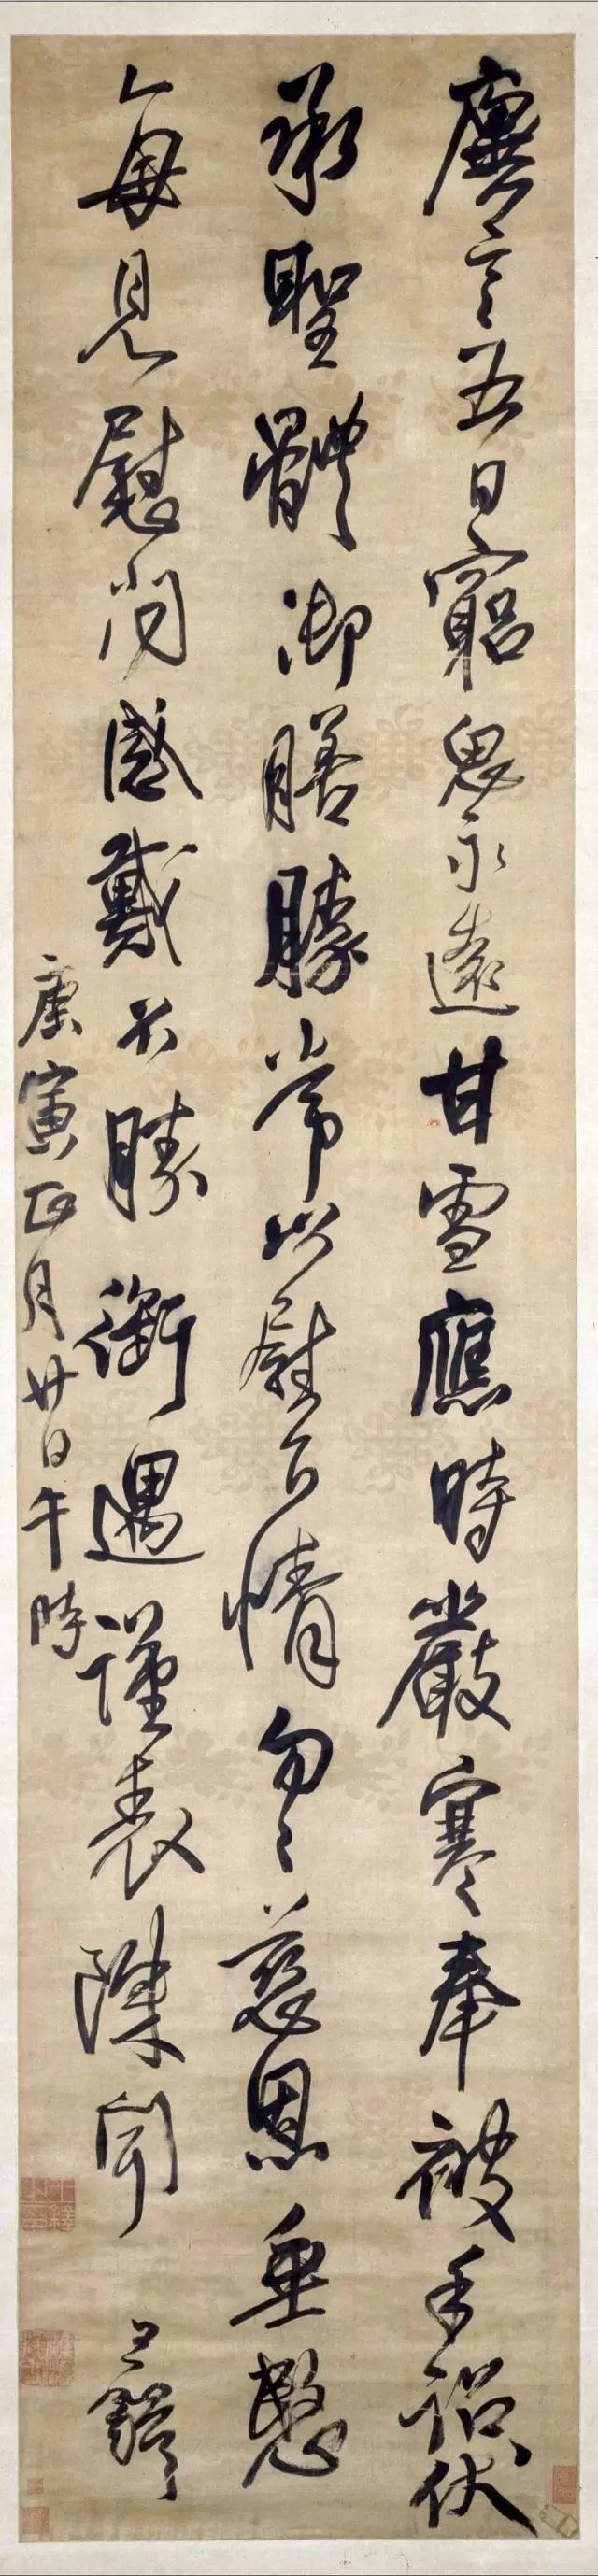 王铎,书法,行书五言律诗立轴,北京故宫博物院,行草书